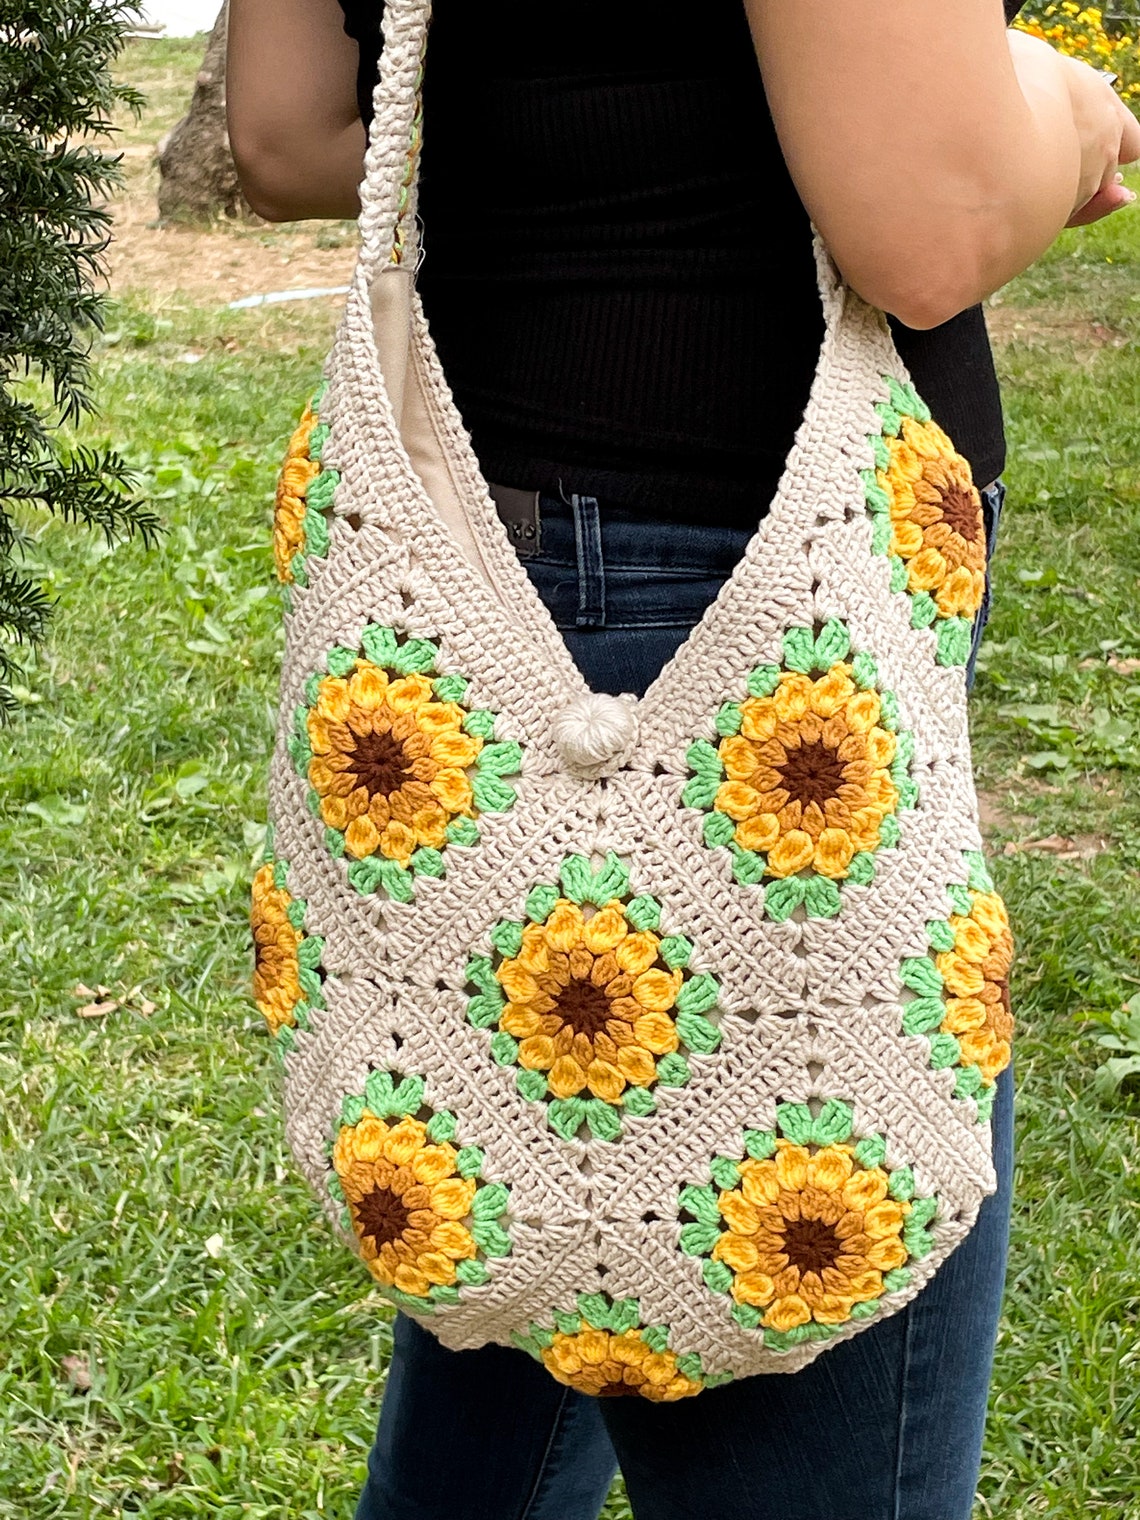 Sunflower Granny Square Crochet Bag Beige Crochet Purse | Etsy